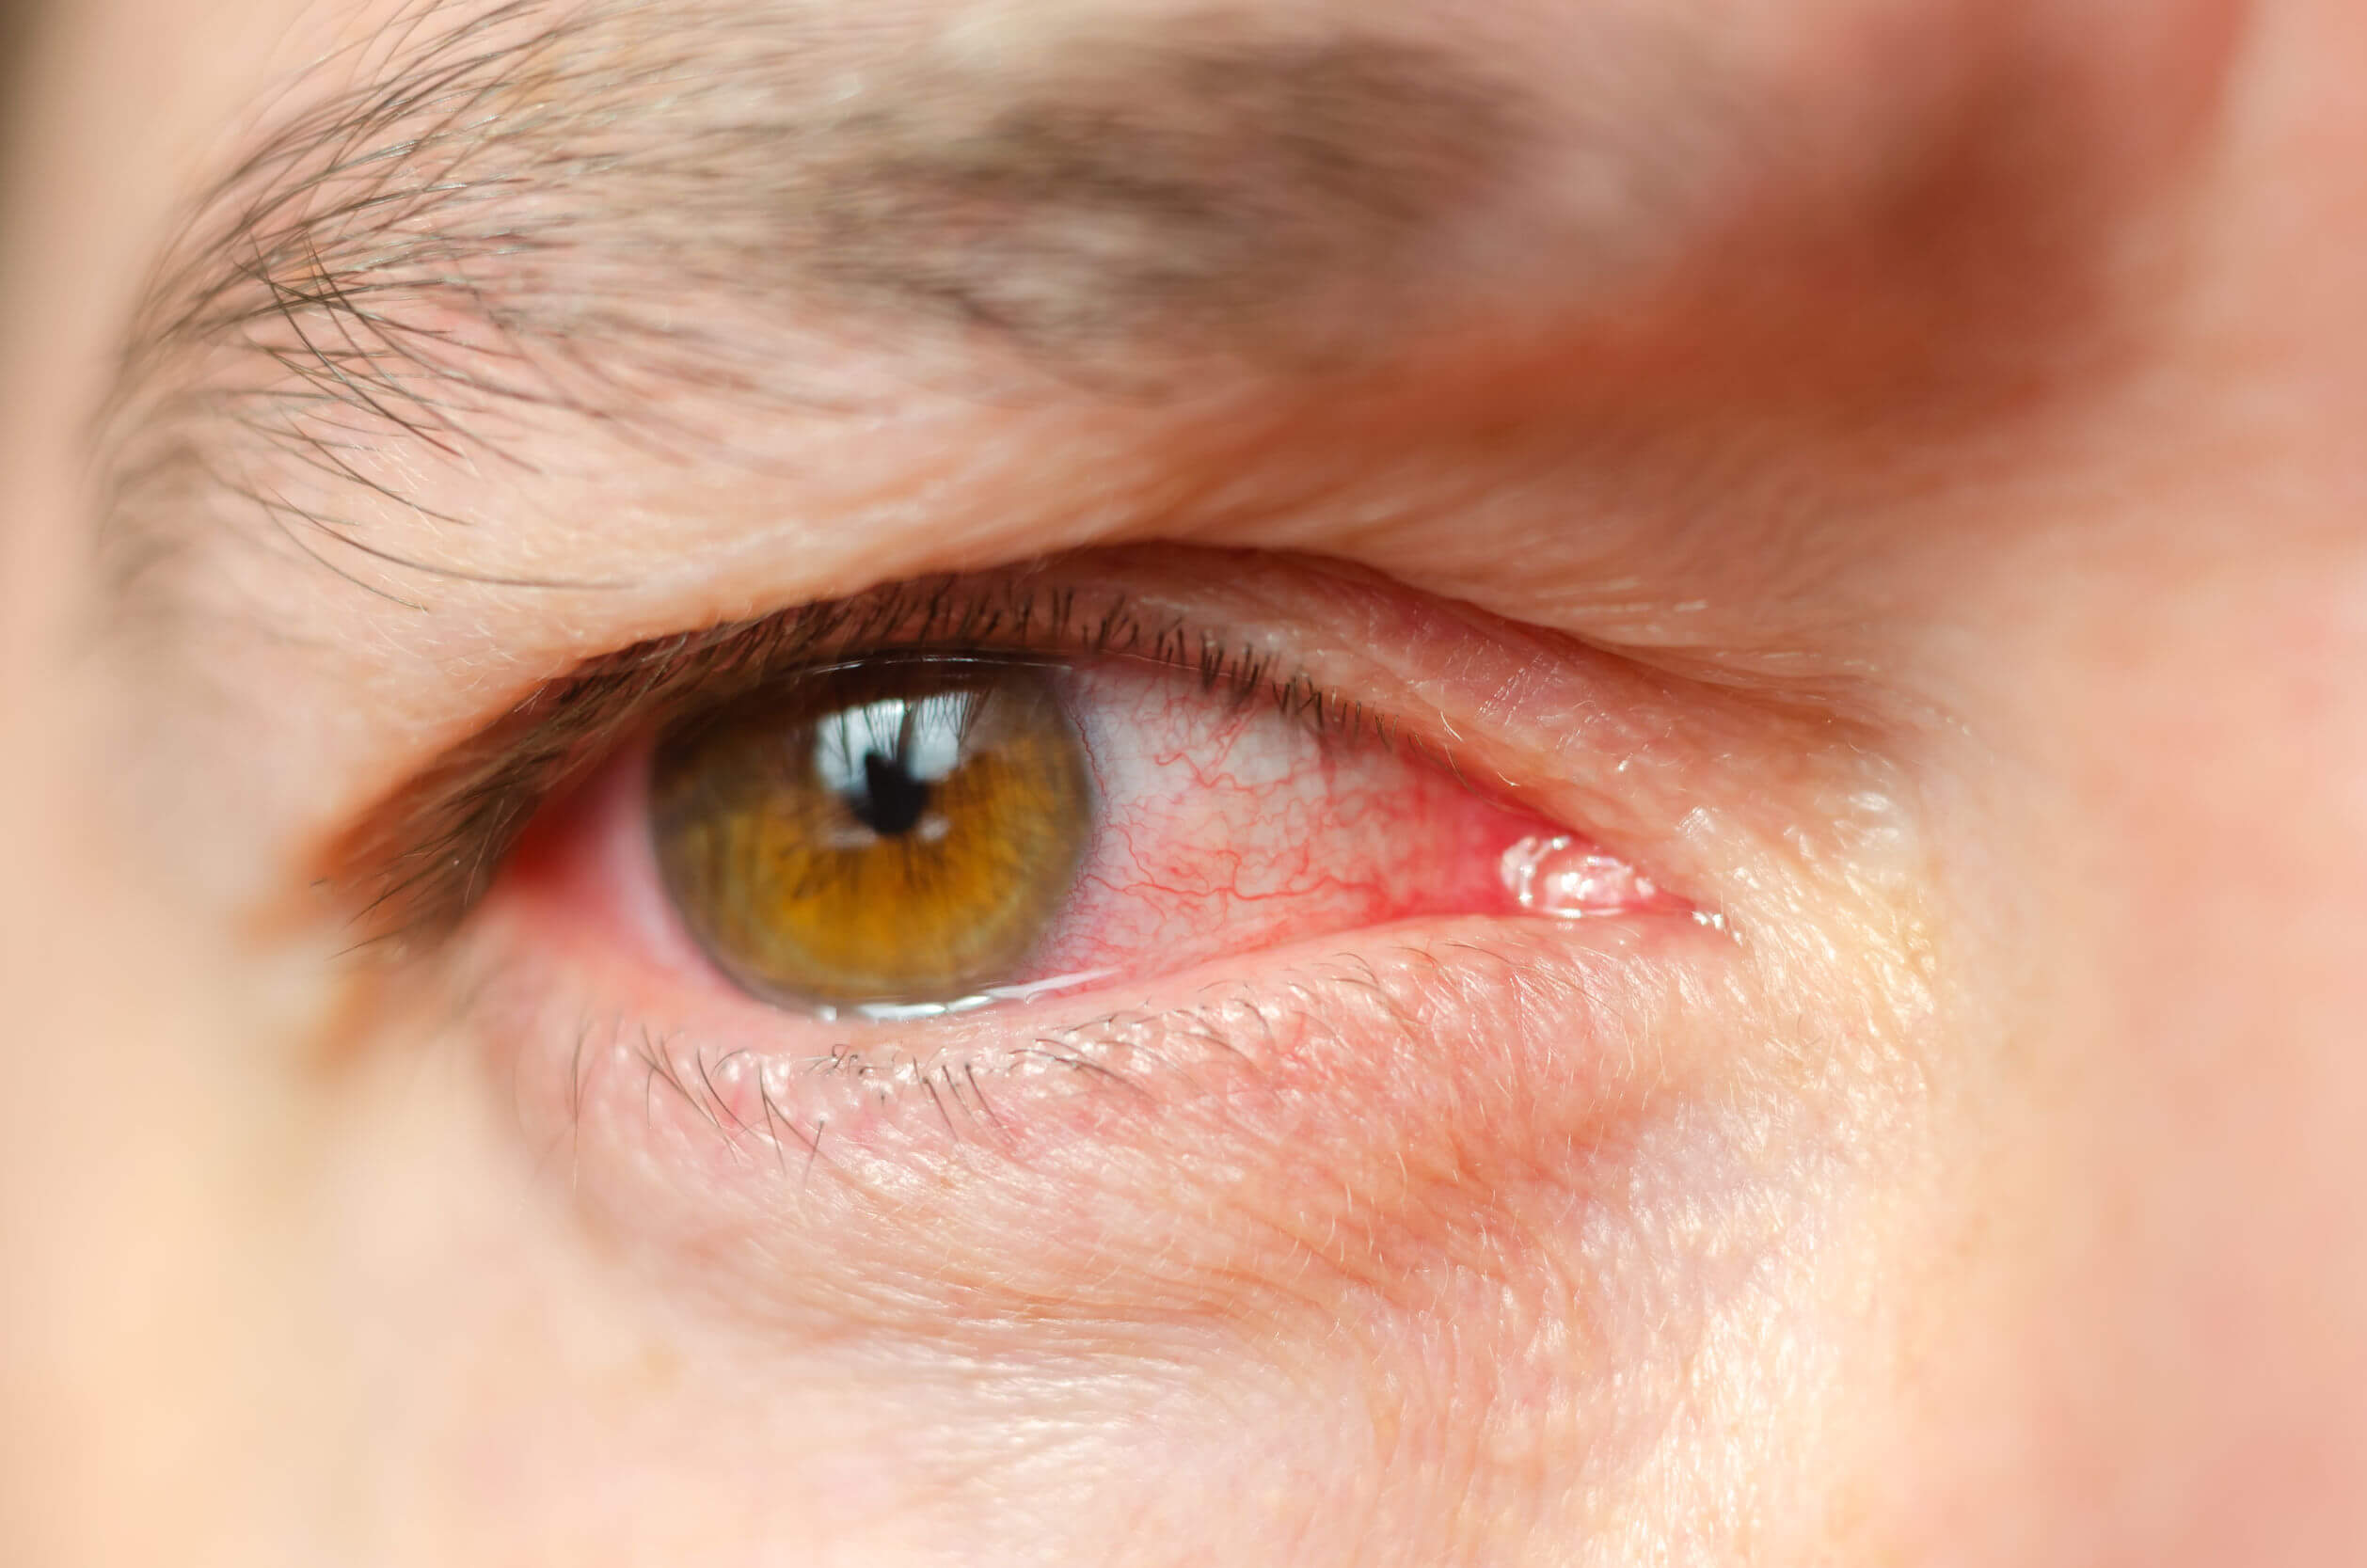 Le glaucome peut provoquer plusieurs signes et symptômes.